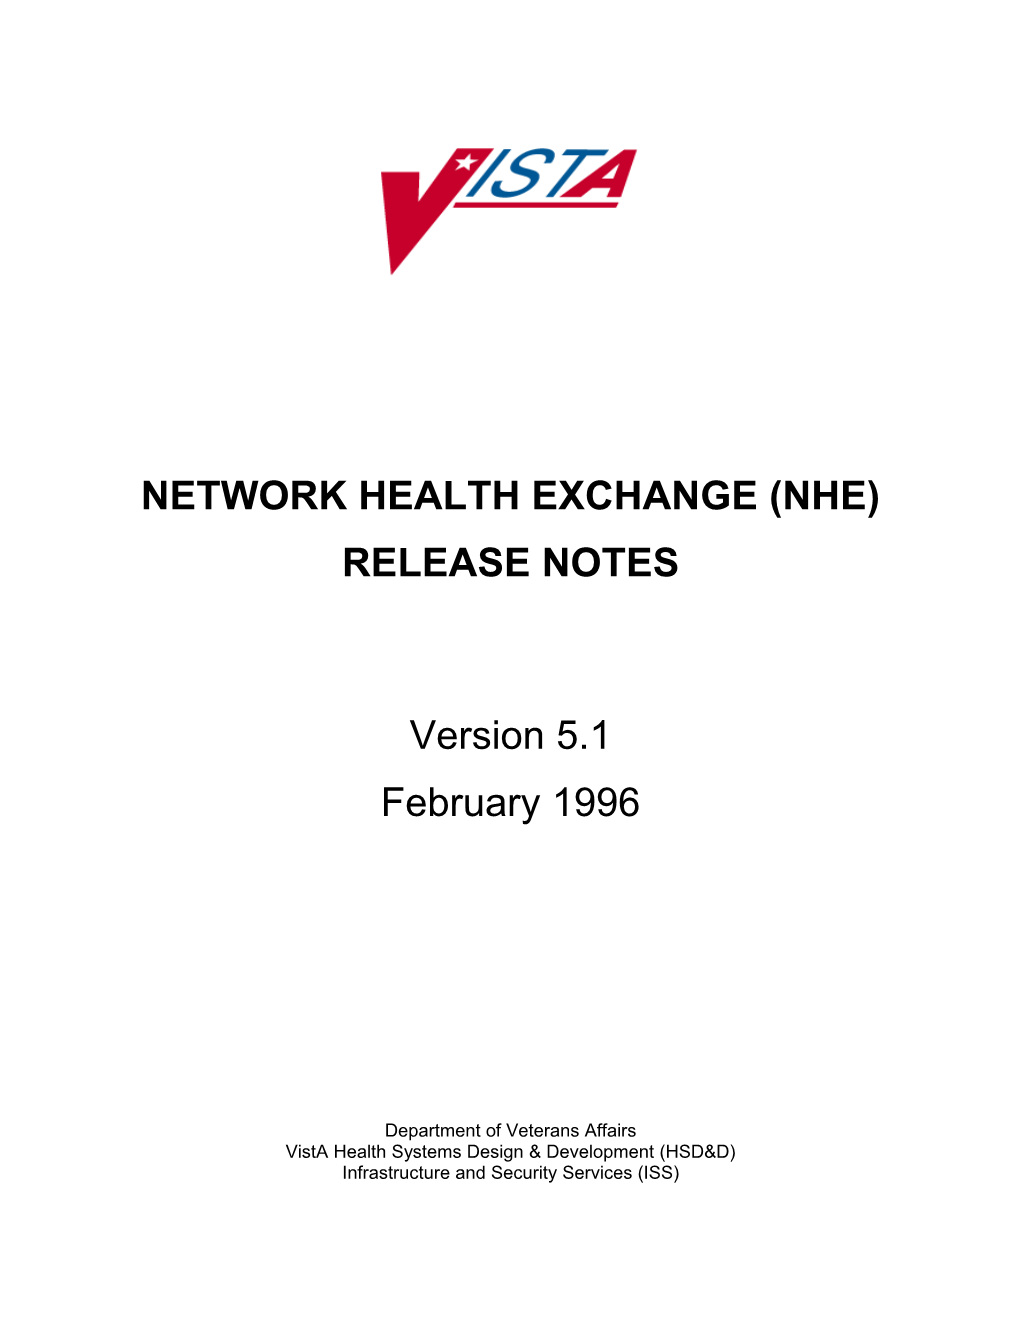 NHE Release Notes V. 1.0